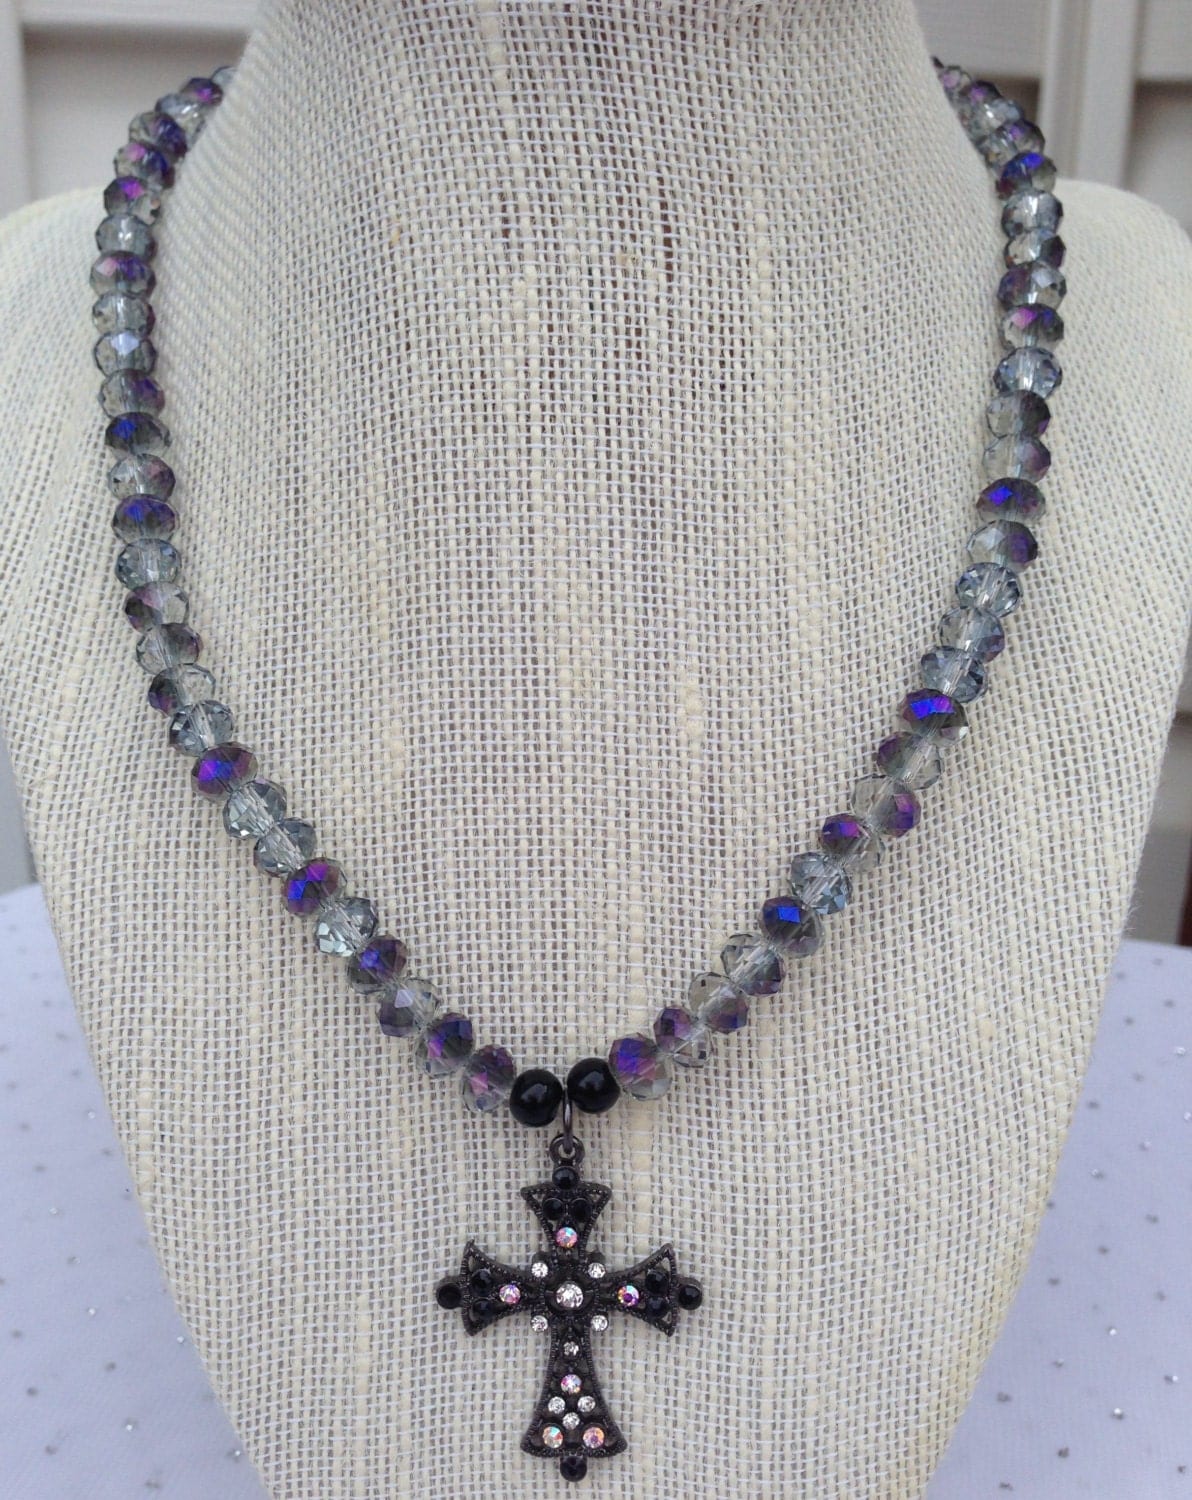 OOAK Cross Necklace Religious Jewelry Unique Jewelry